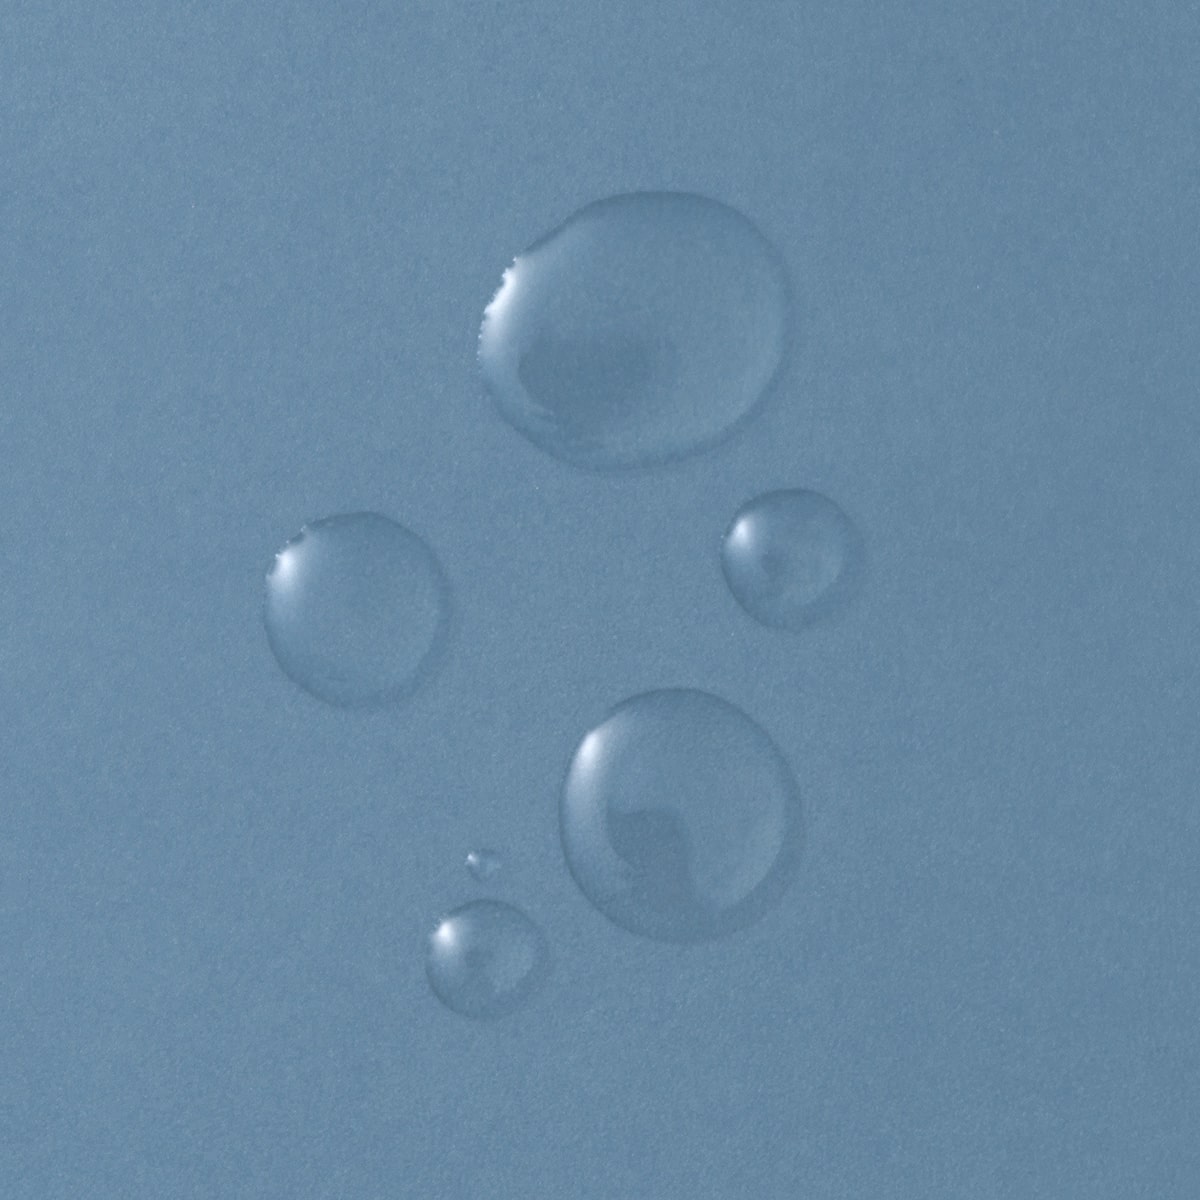 Konsistenz Probe: auf eine glatte, blaue Oberfläche wurden mehrere Tropfen der flüssig-klaren Priming Solution gegeben. 